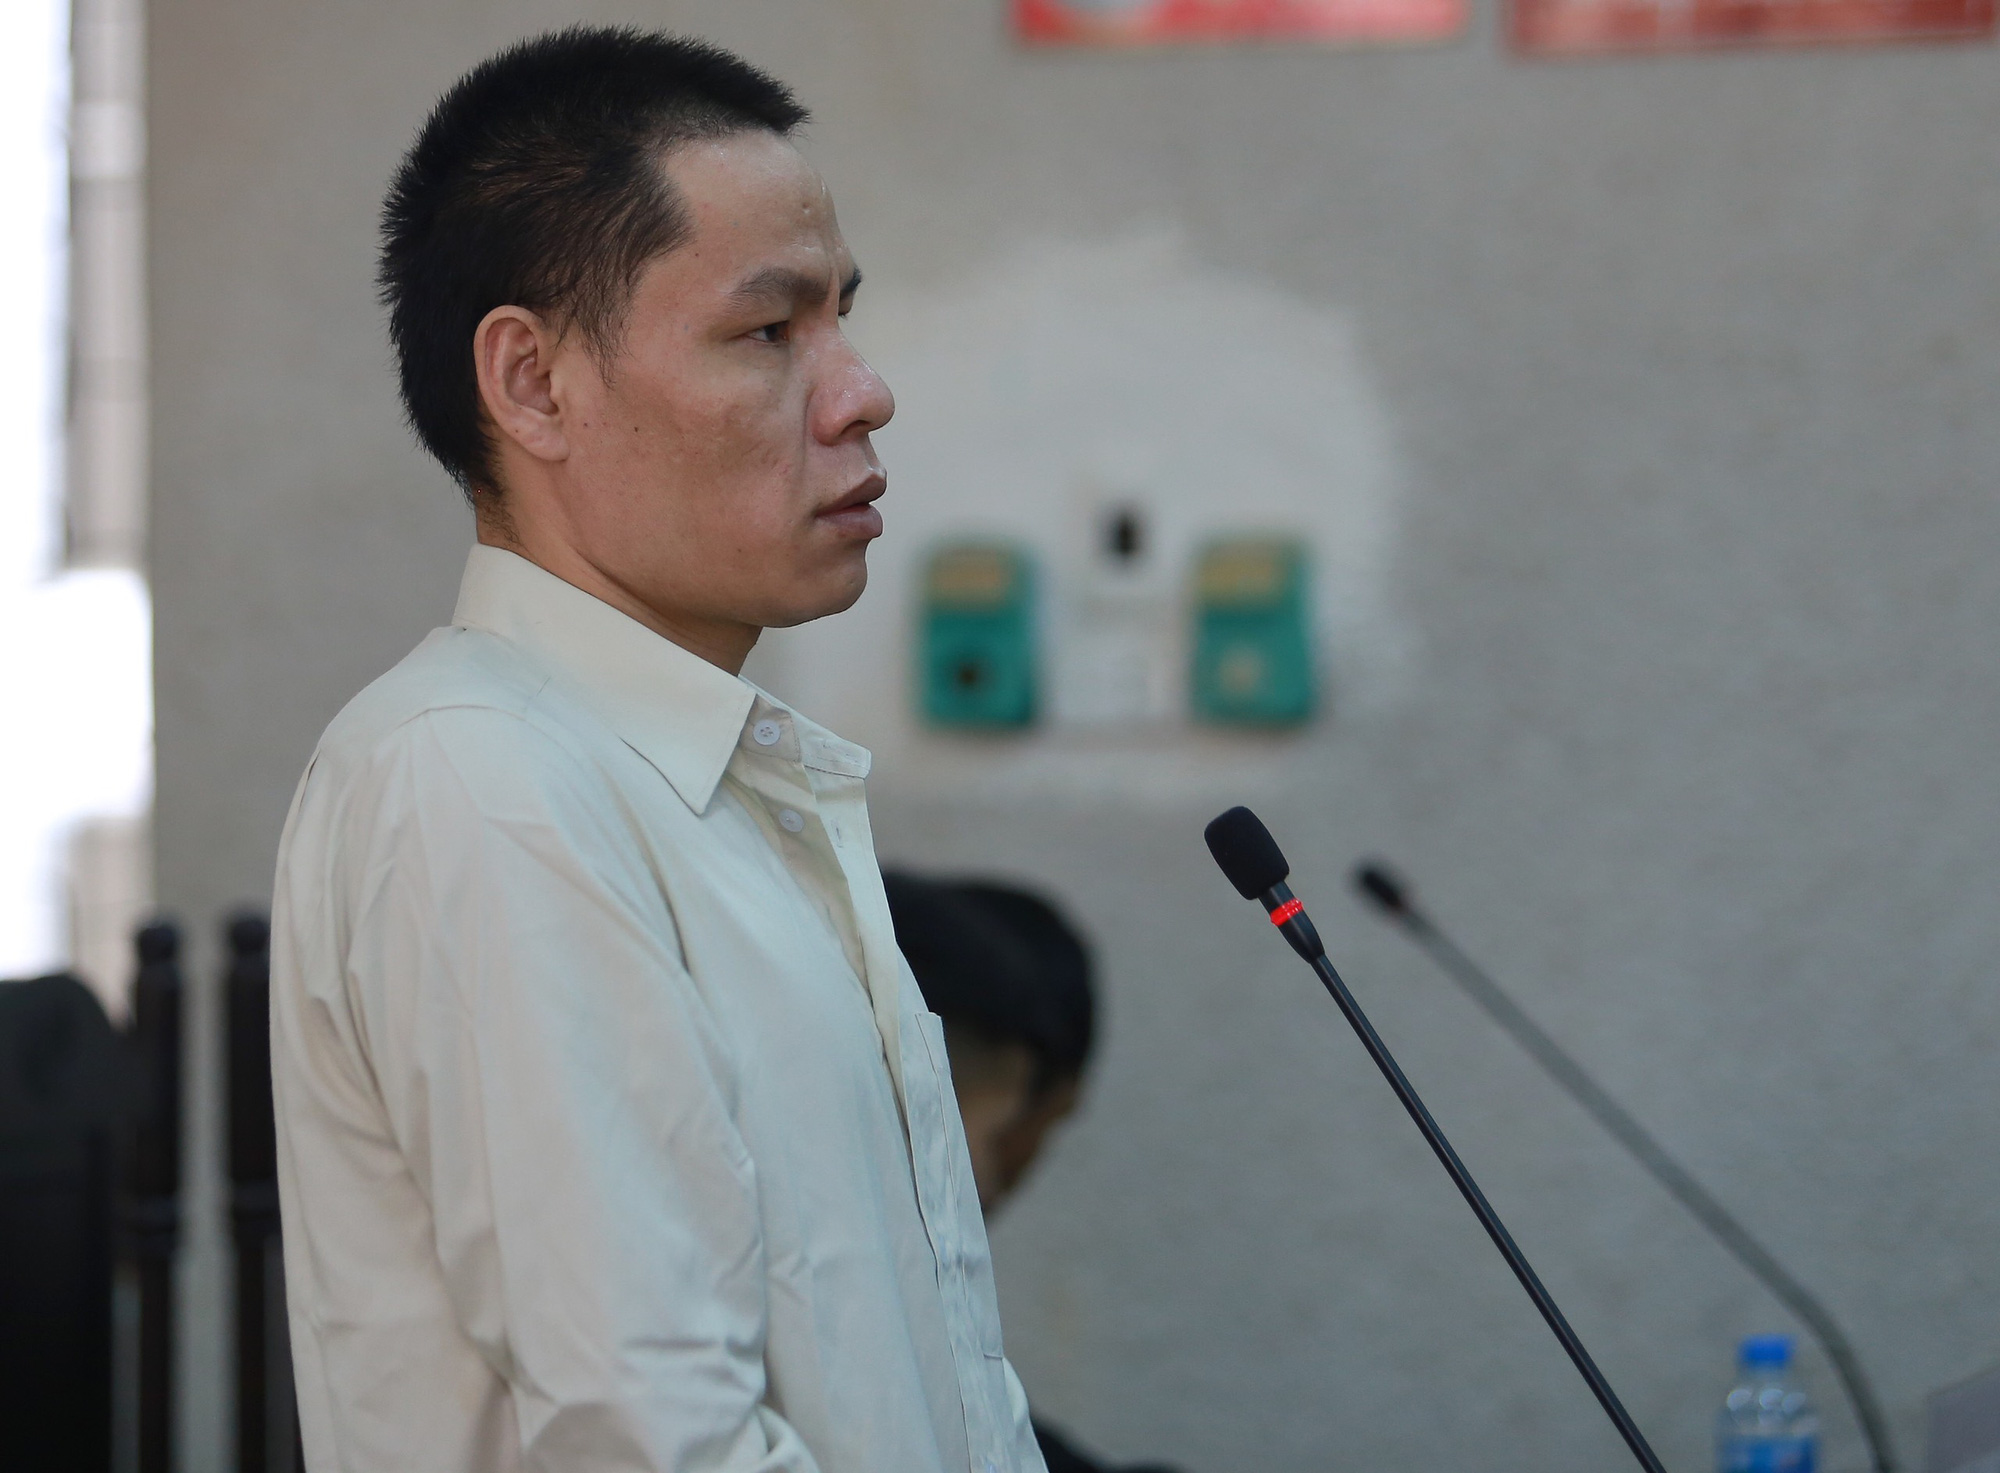 Nhóm sát nhân sát hại nữ sinh giao gà ở Điện Biên kêu oan nói bị ép cung, đánh đập: &quot;Bị cáo toàn bị đánh đập trước khi lấy lời khai&quot; - Ảnh 5.